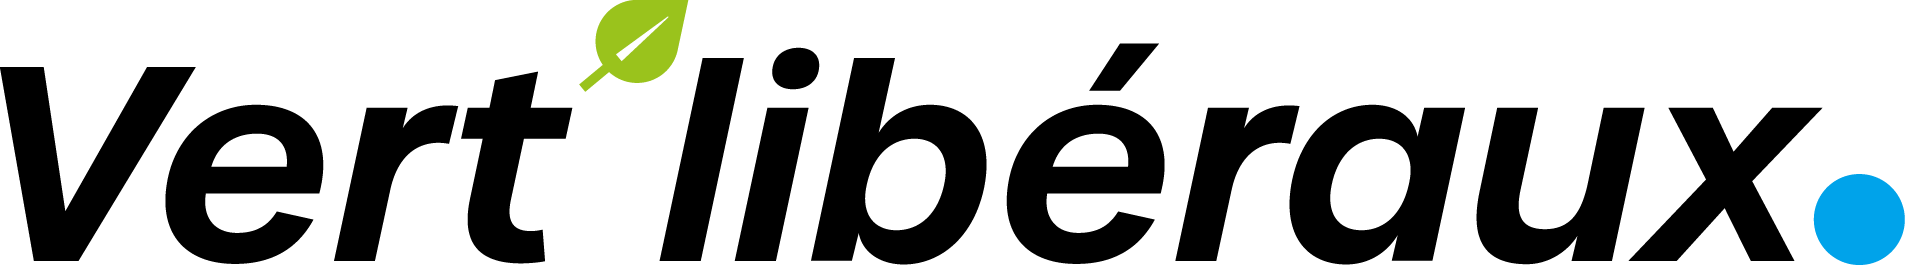 vert liberaux - logo